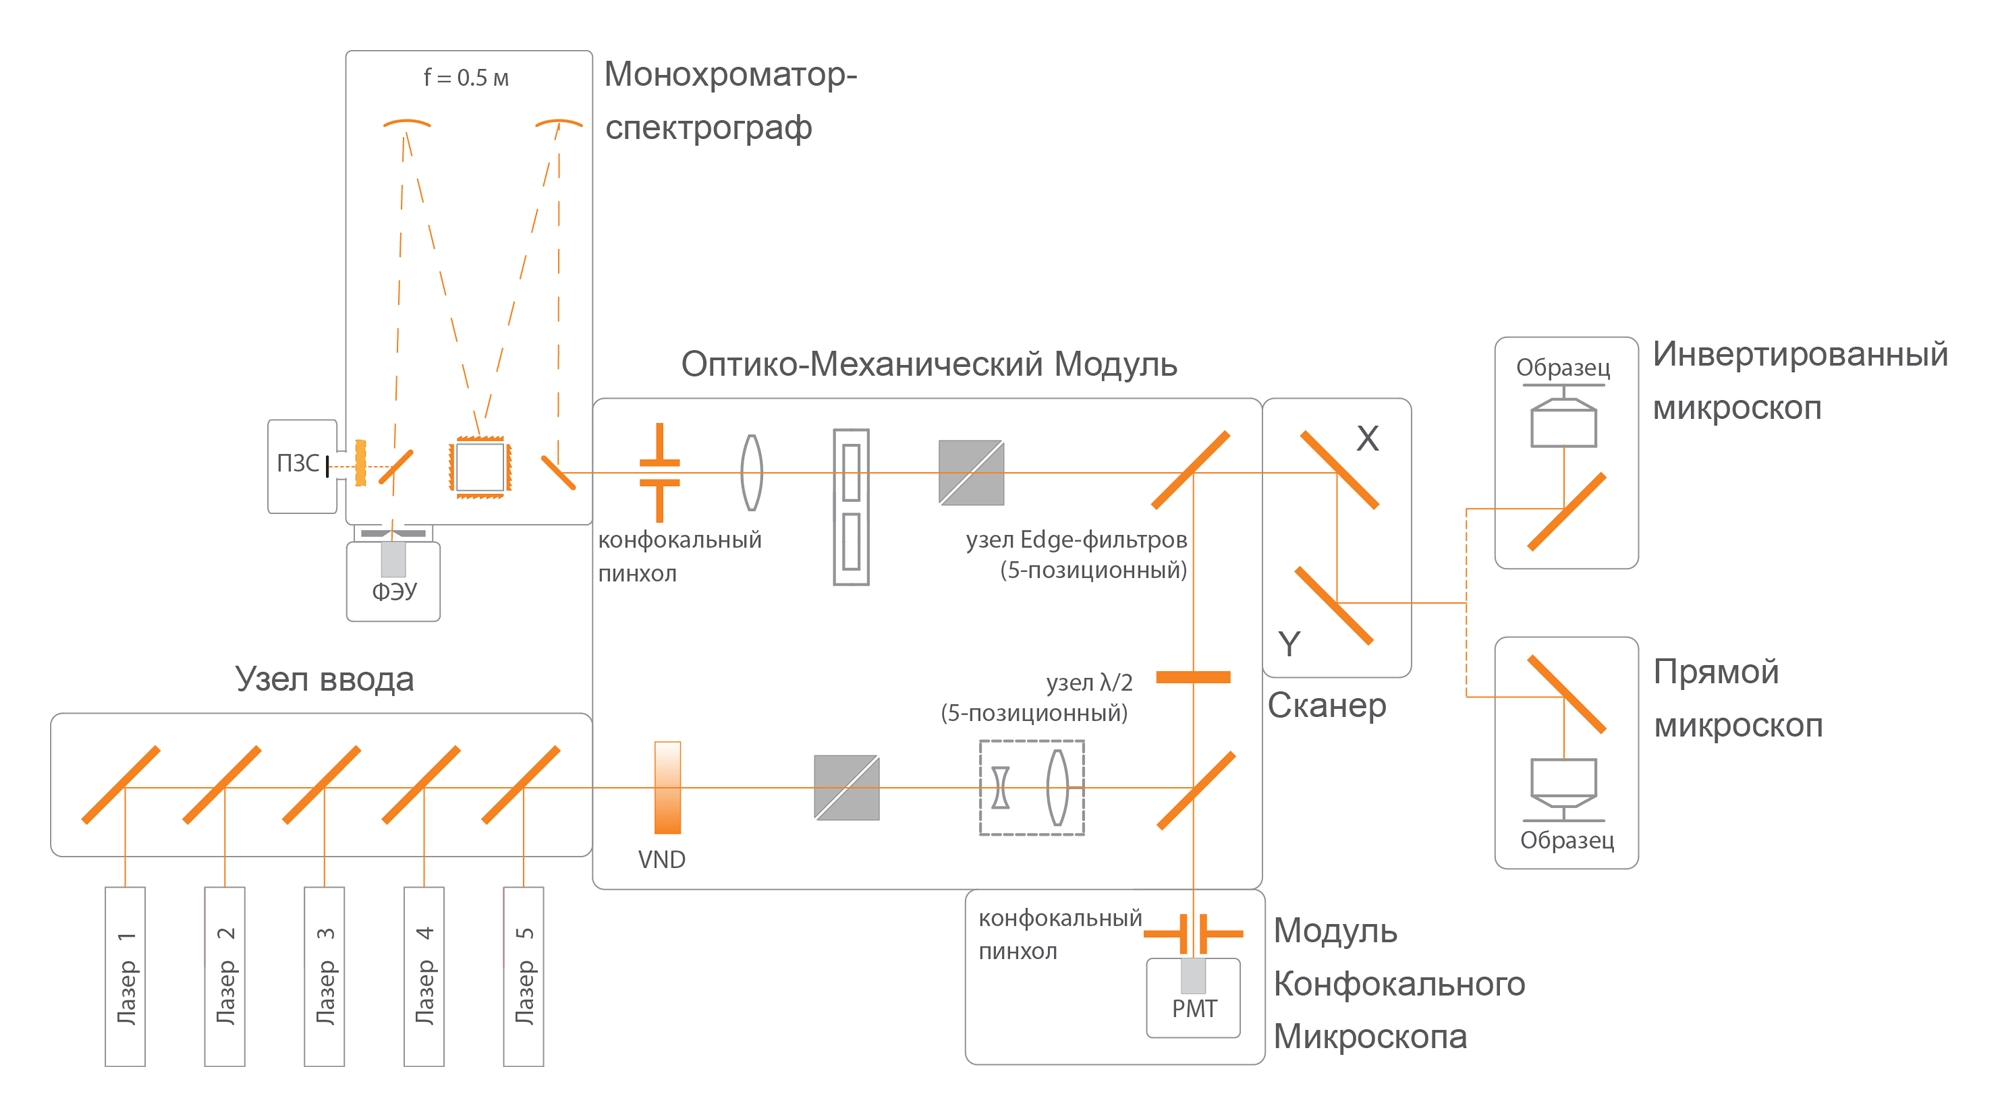 Микроскоп Confotec-NR500: модули системы